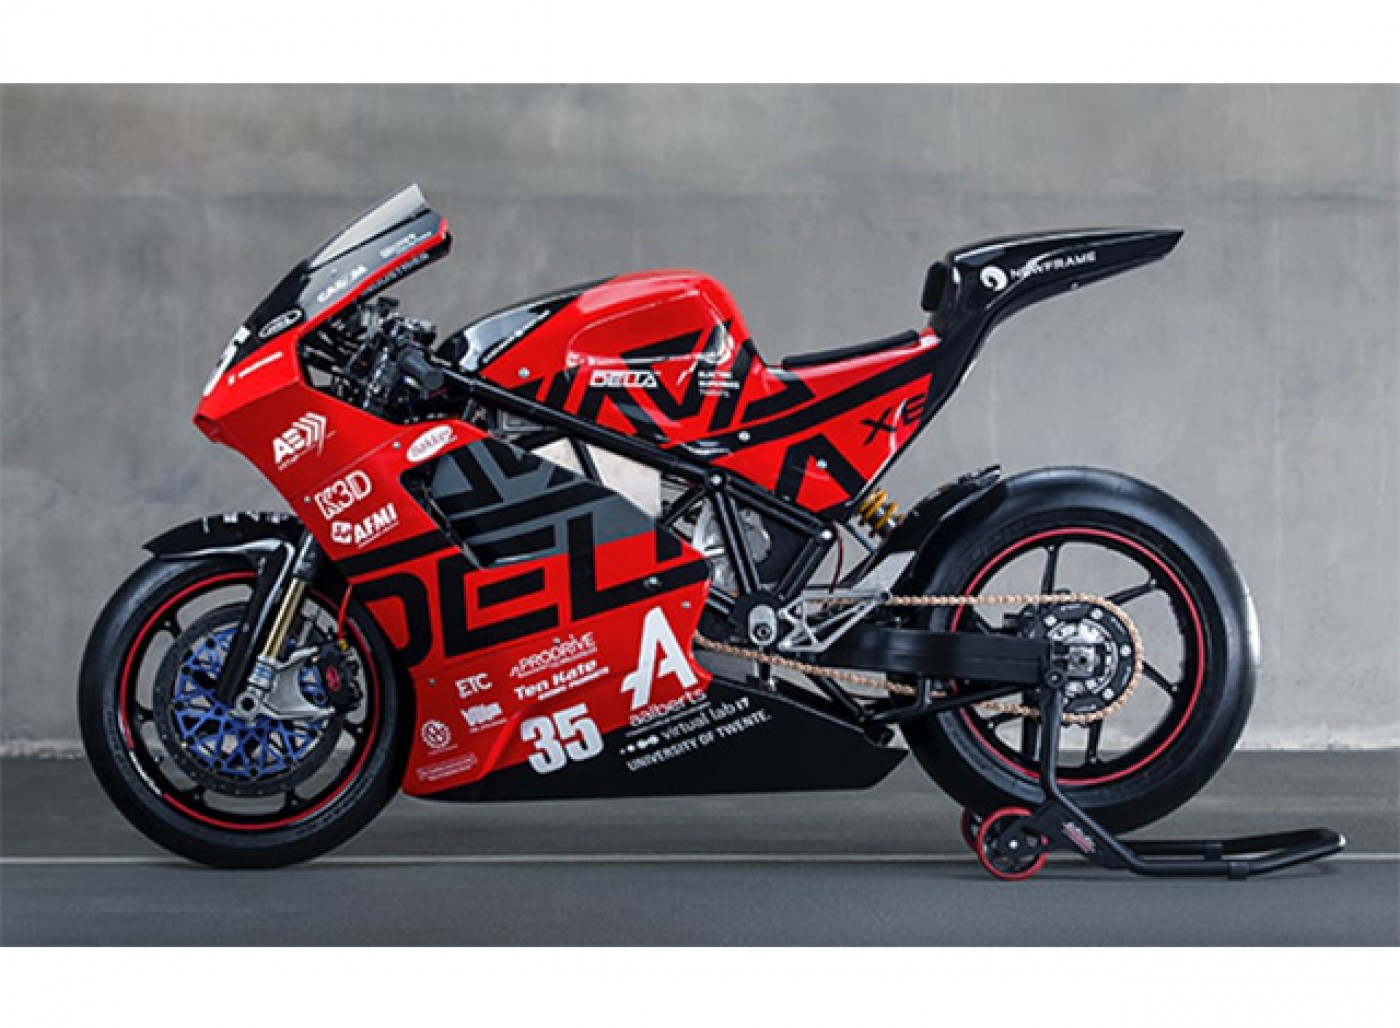 Delta-XE- motocicletă electrică cu performanțe de superbike